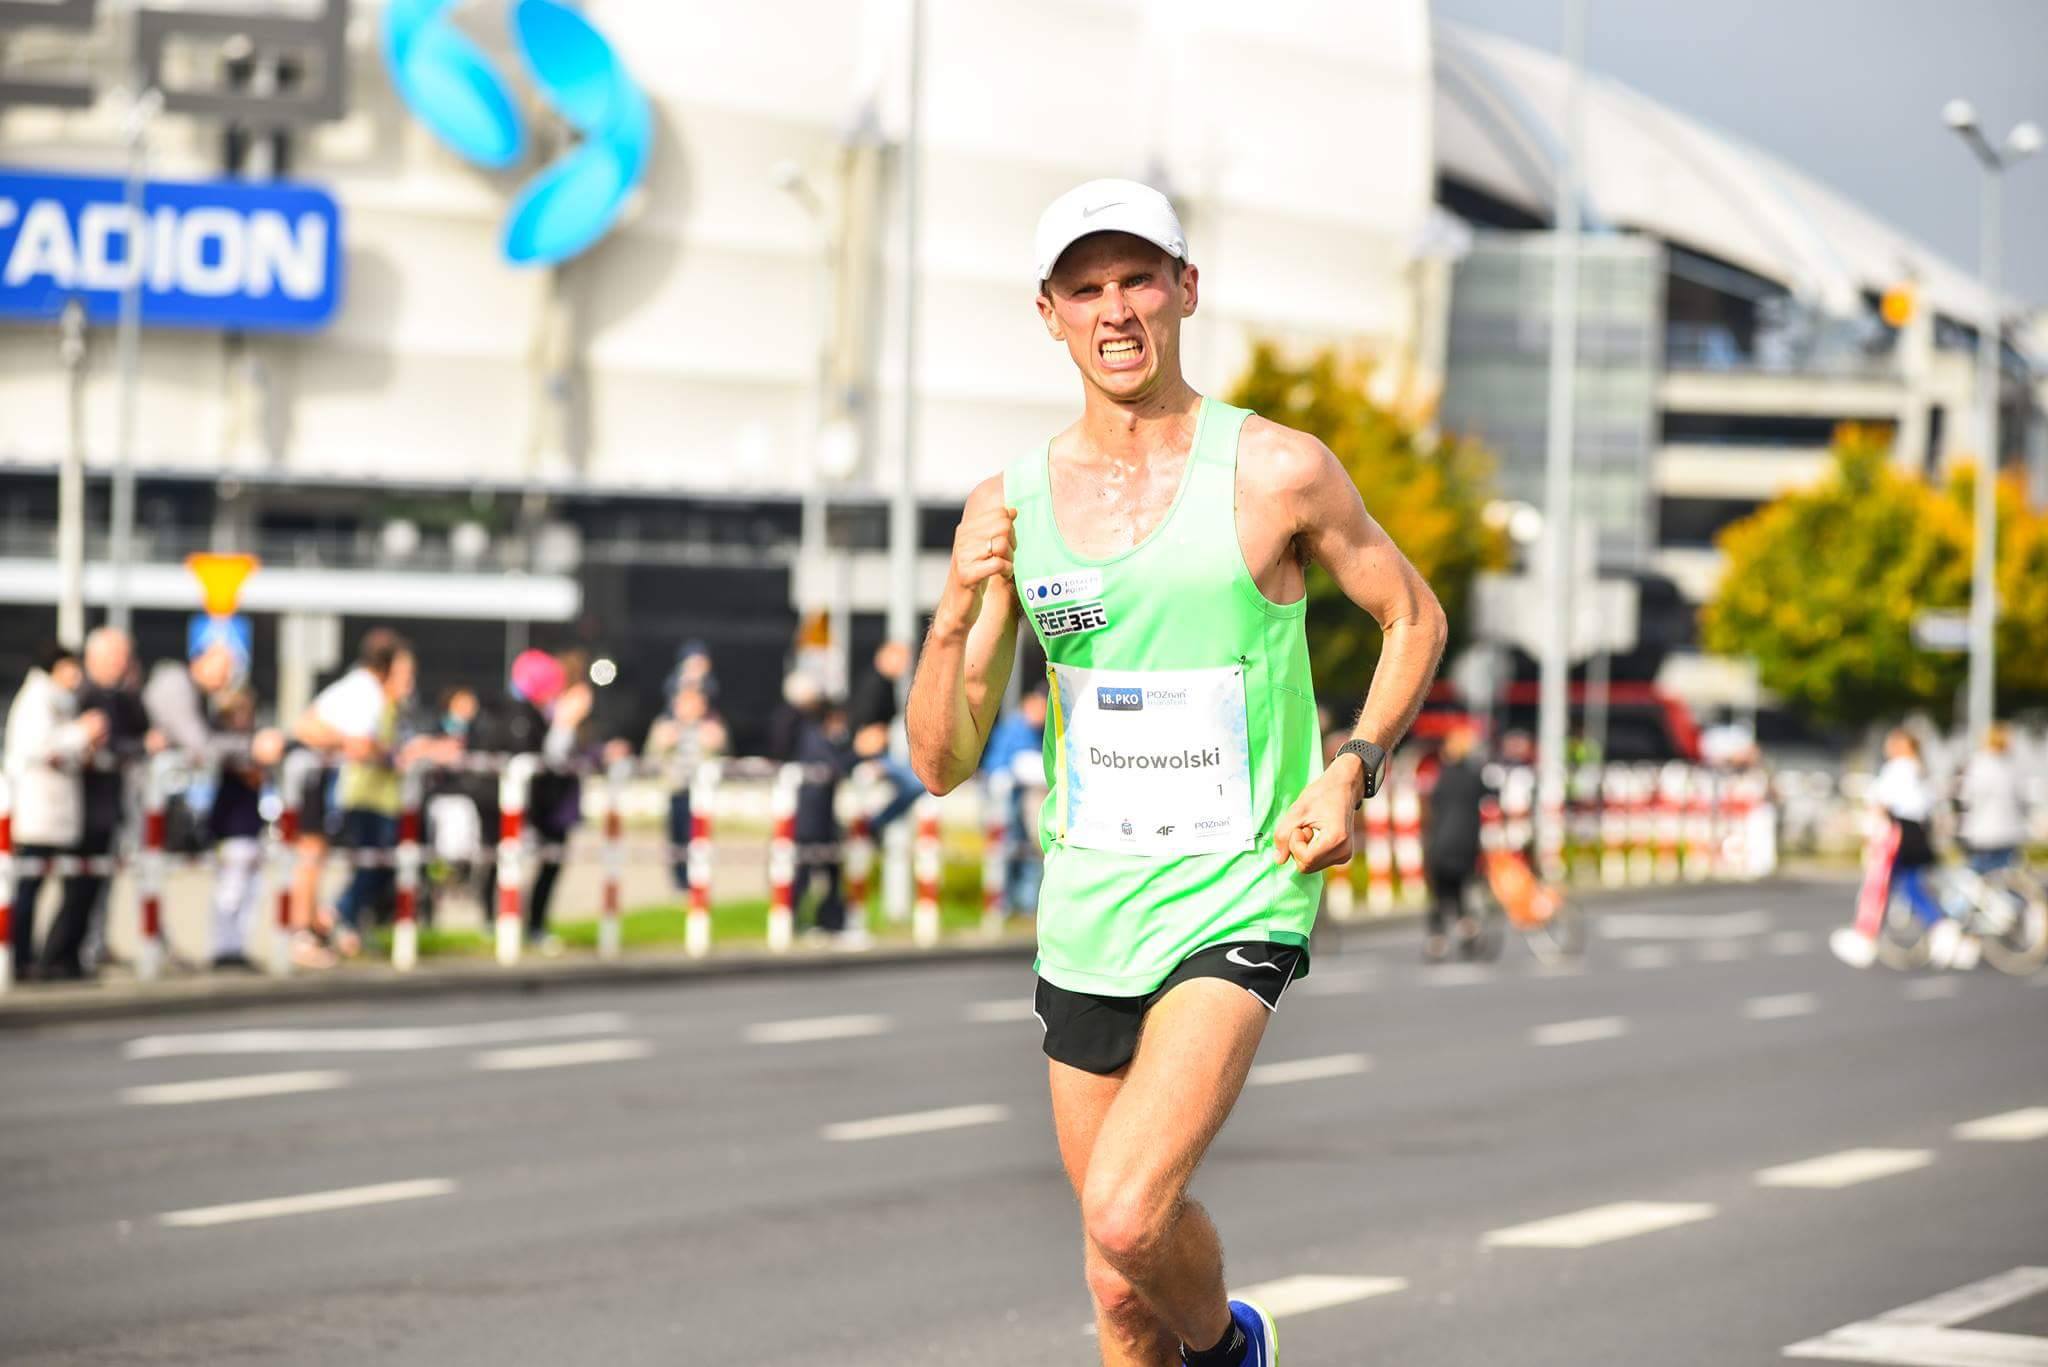 trener biegania Emil Dobrowolski na trasie biegu - maraton Poznań